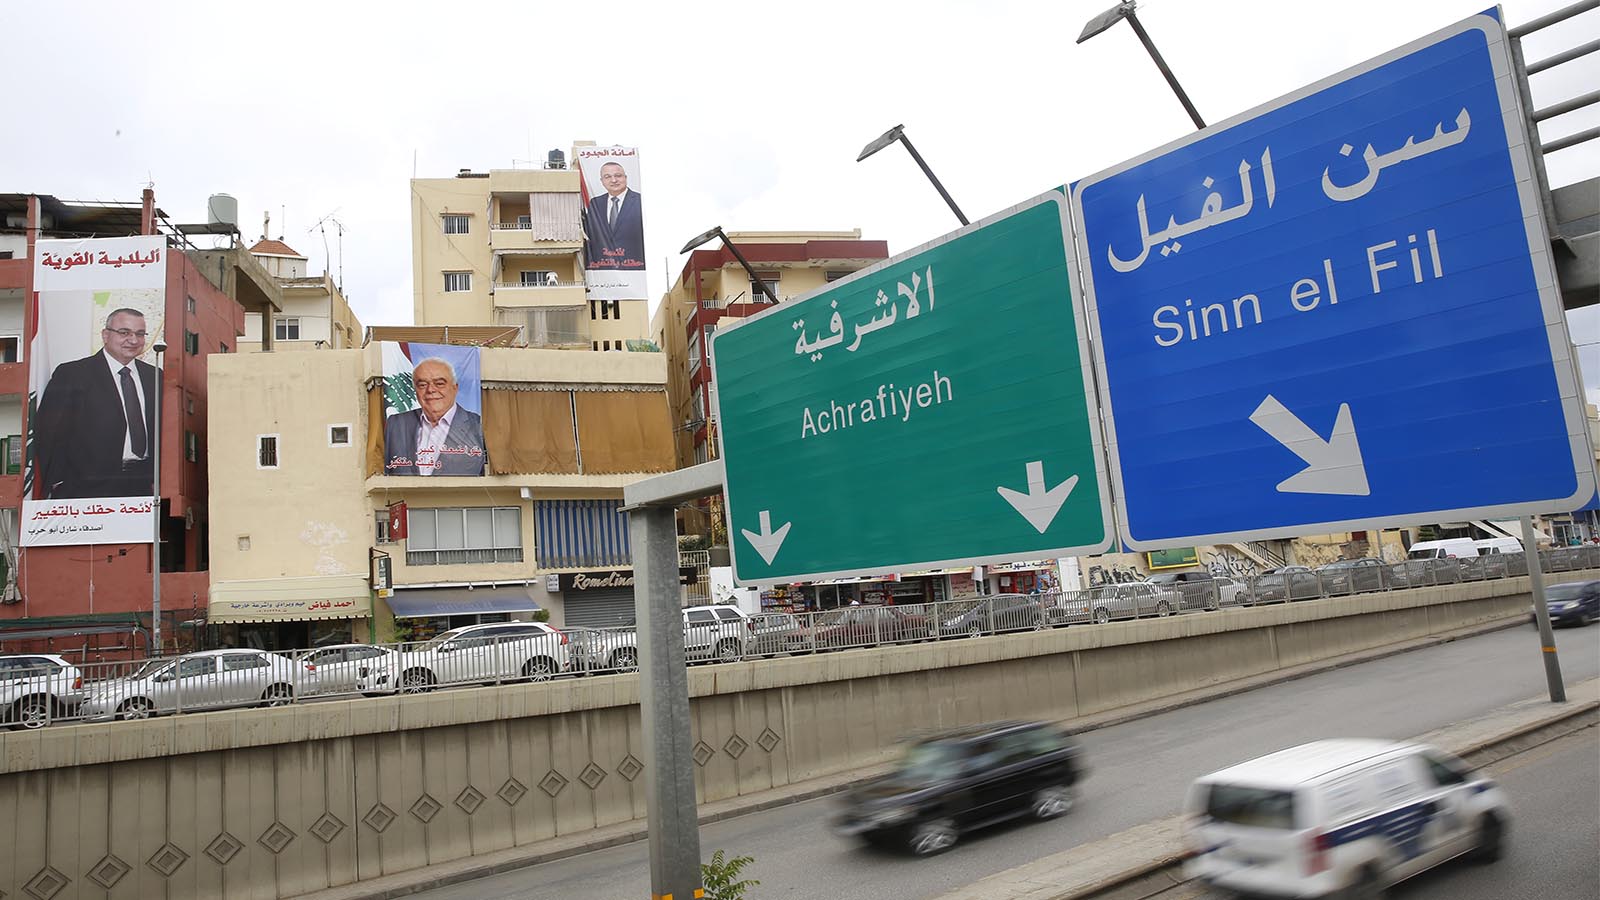 4 مسارات للنقل المشترك: الحركة في بيروت ستصير أسهل؟